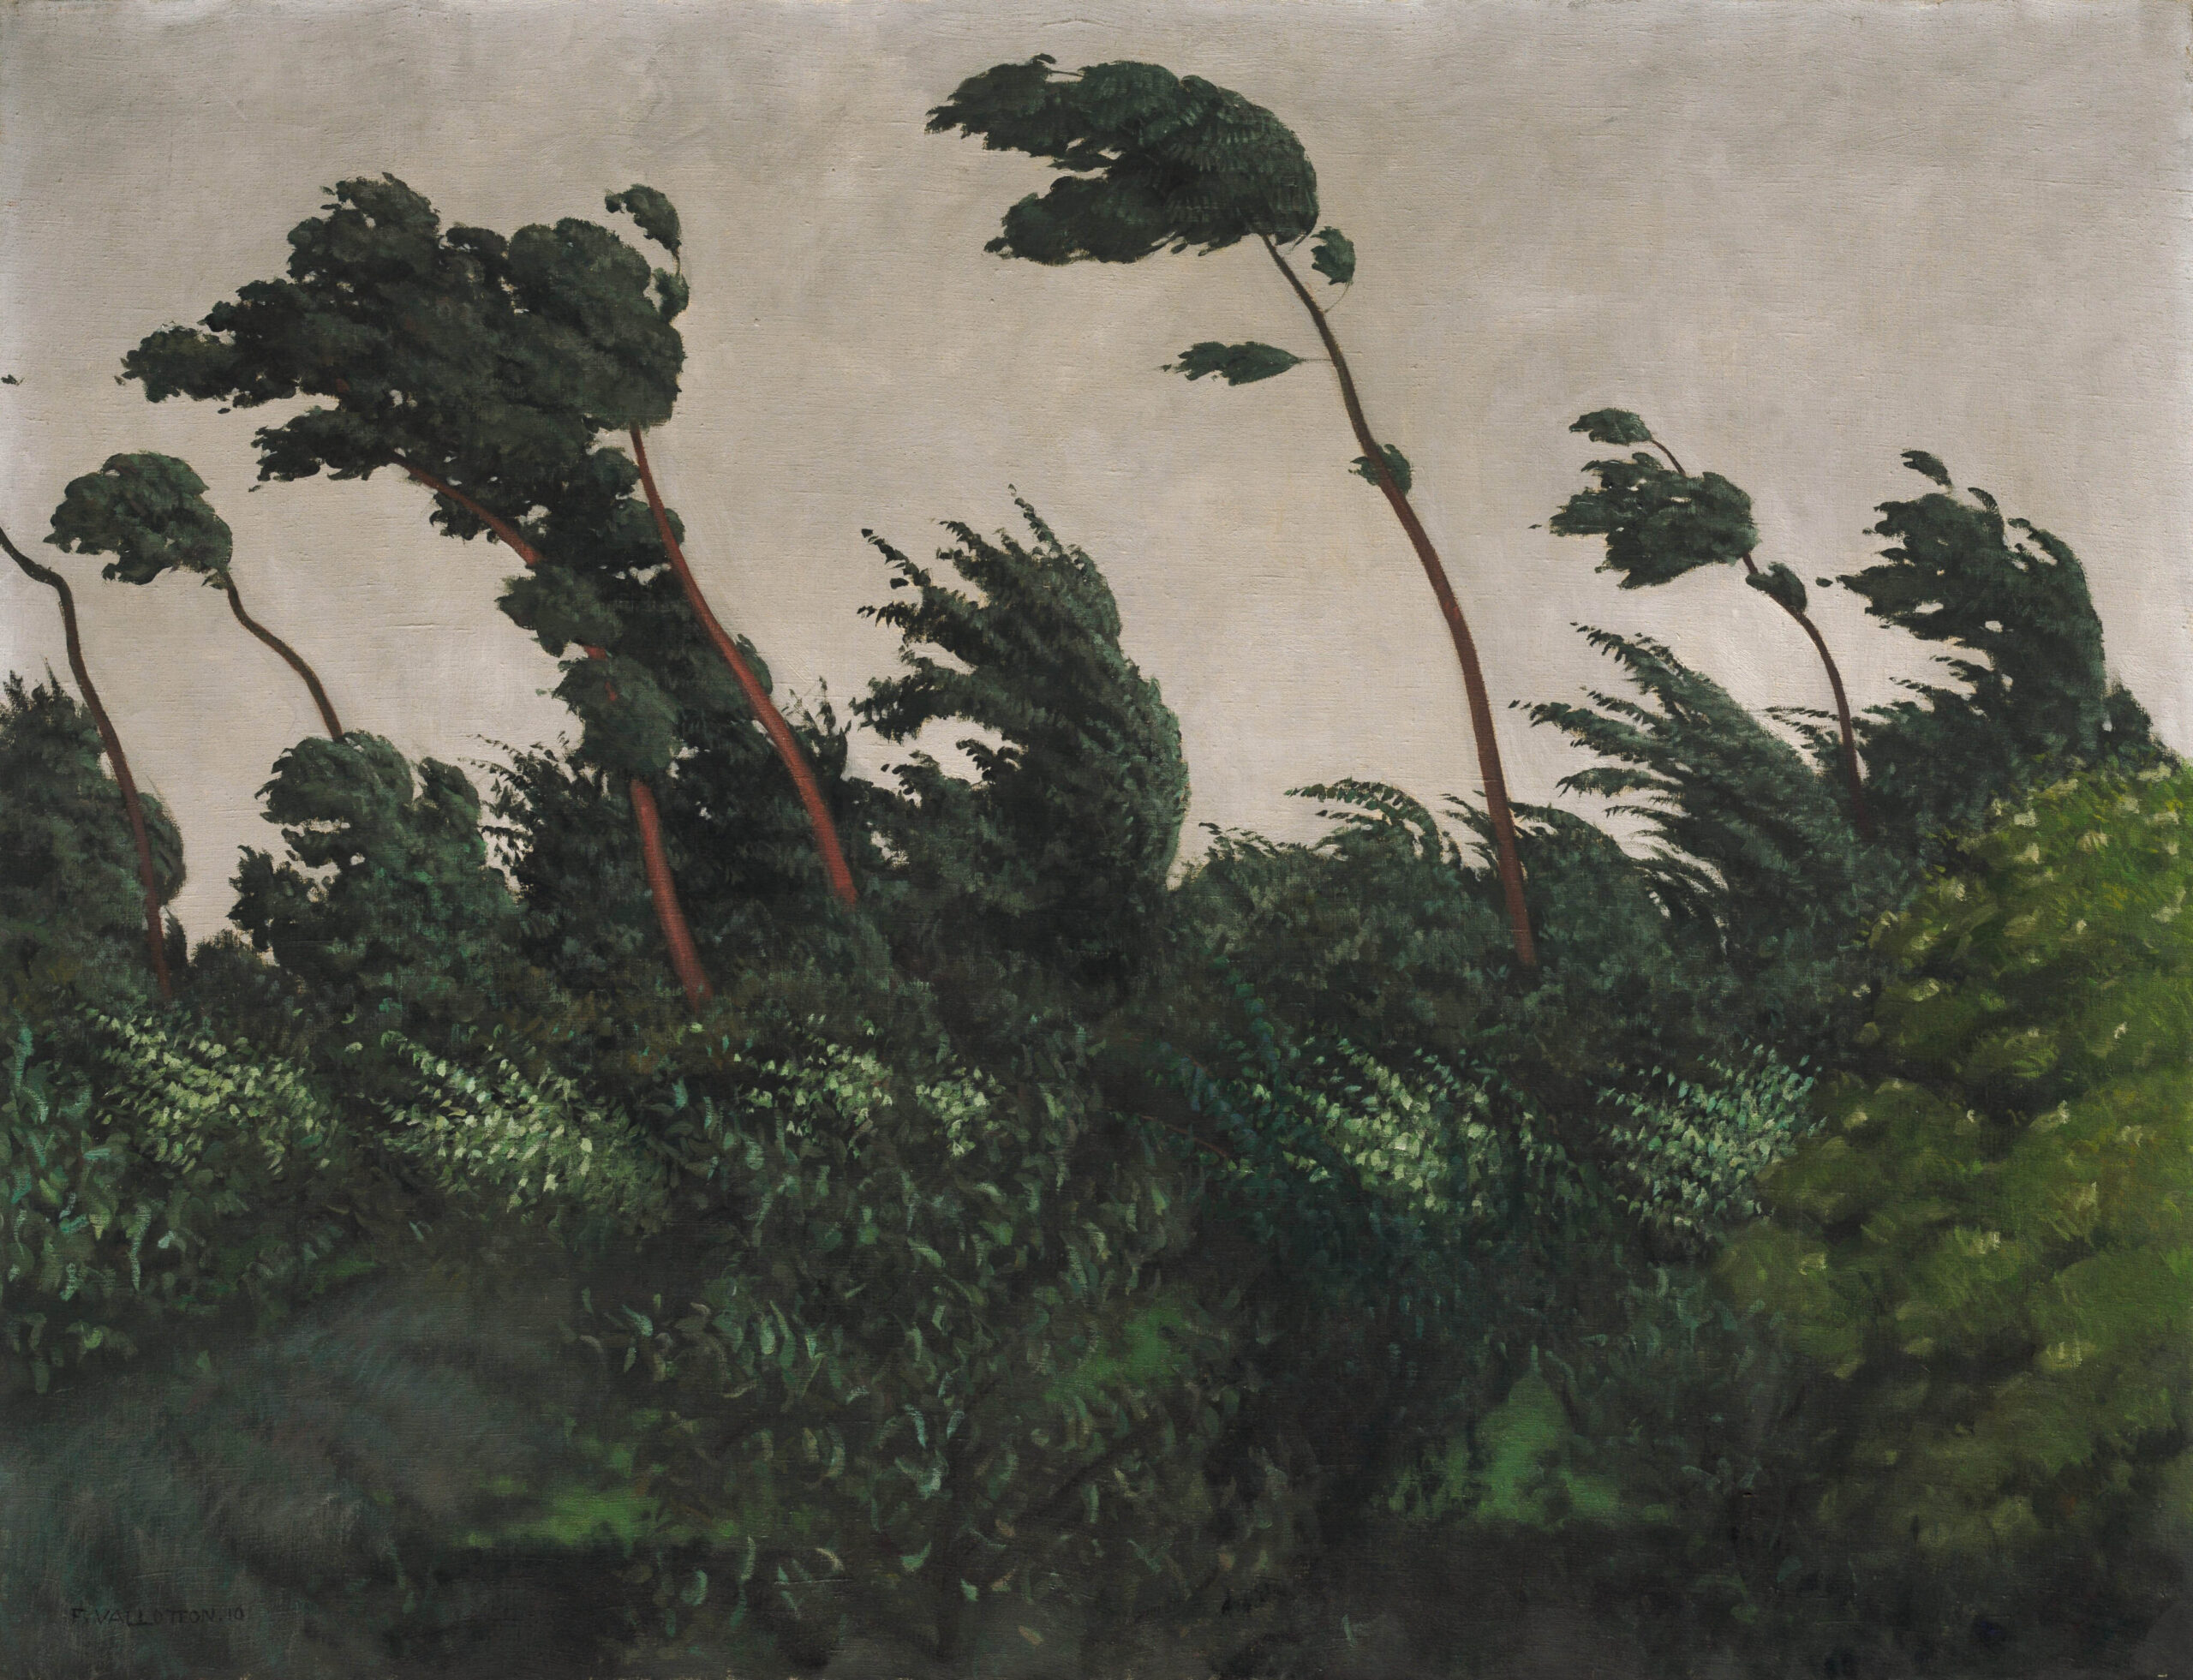 Félix Vallotton (1865-1925), Le Vent, 1910. Huile sur toile, 89,2 x 116,2 cm. Washington, National Gallery of Art. Photo service de presse. © Courtesy National Gallery of Art, Washington
